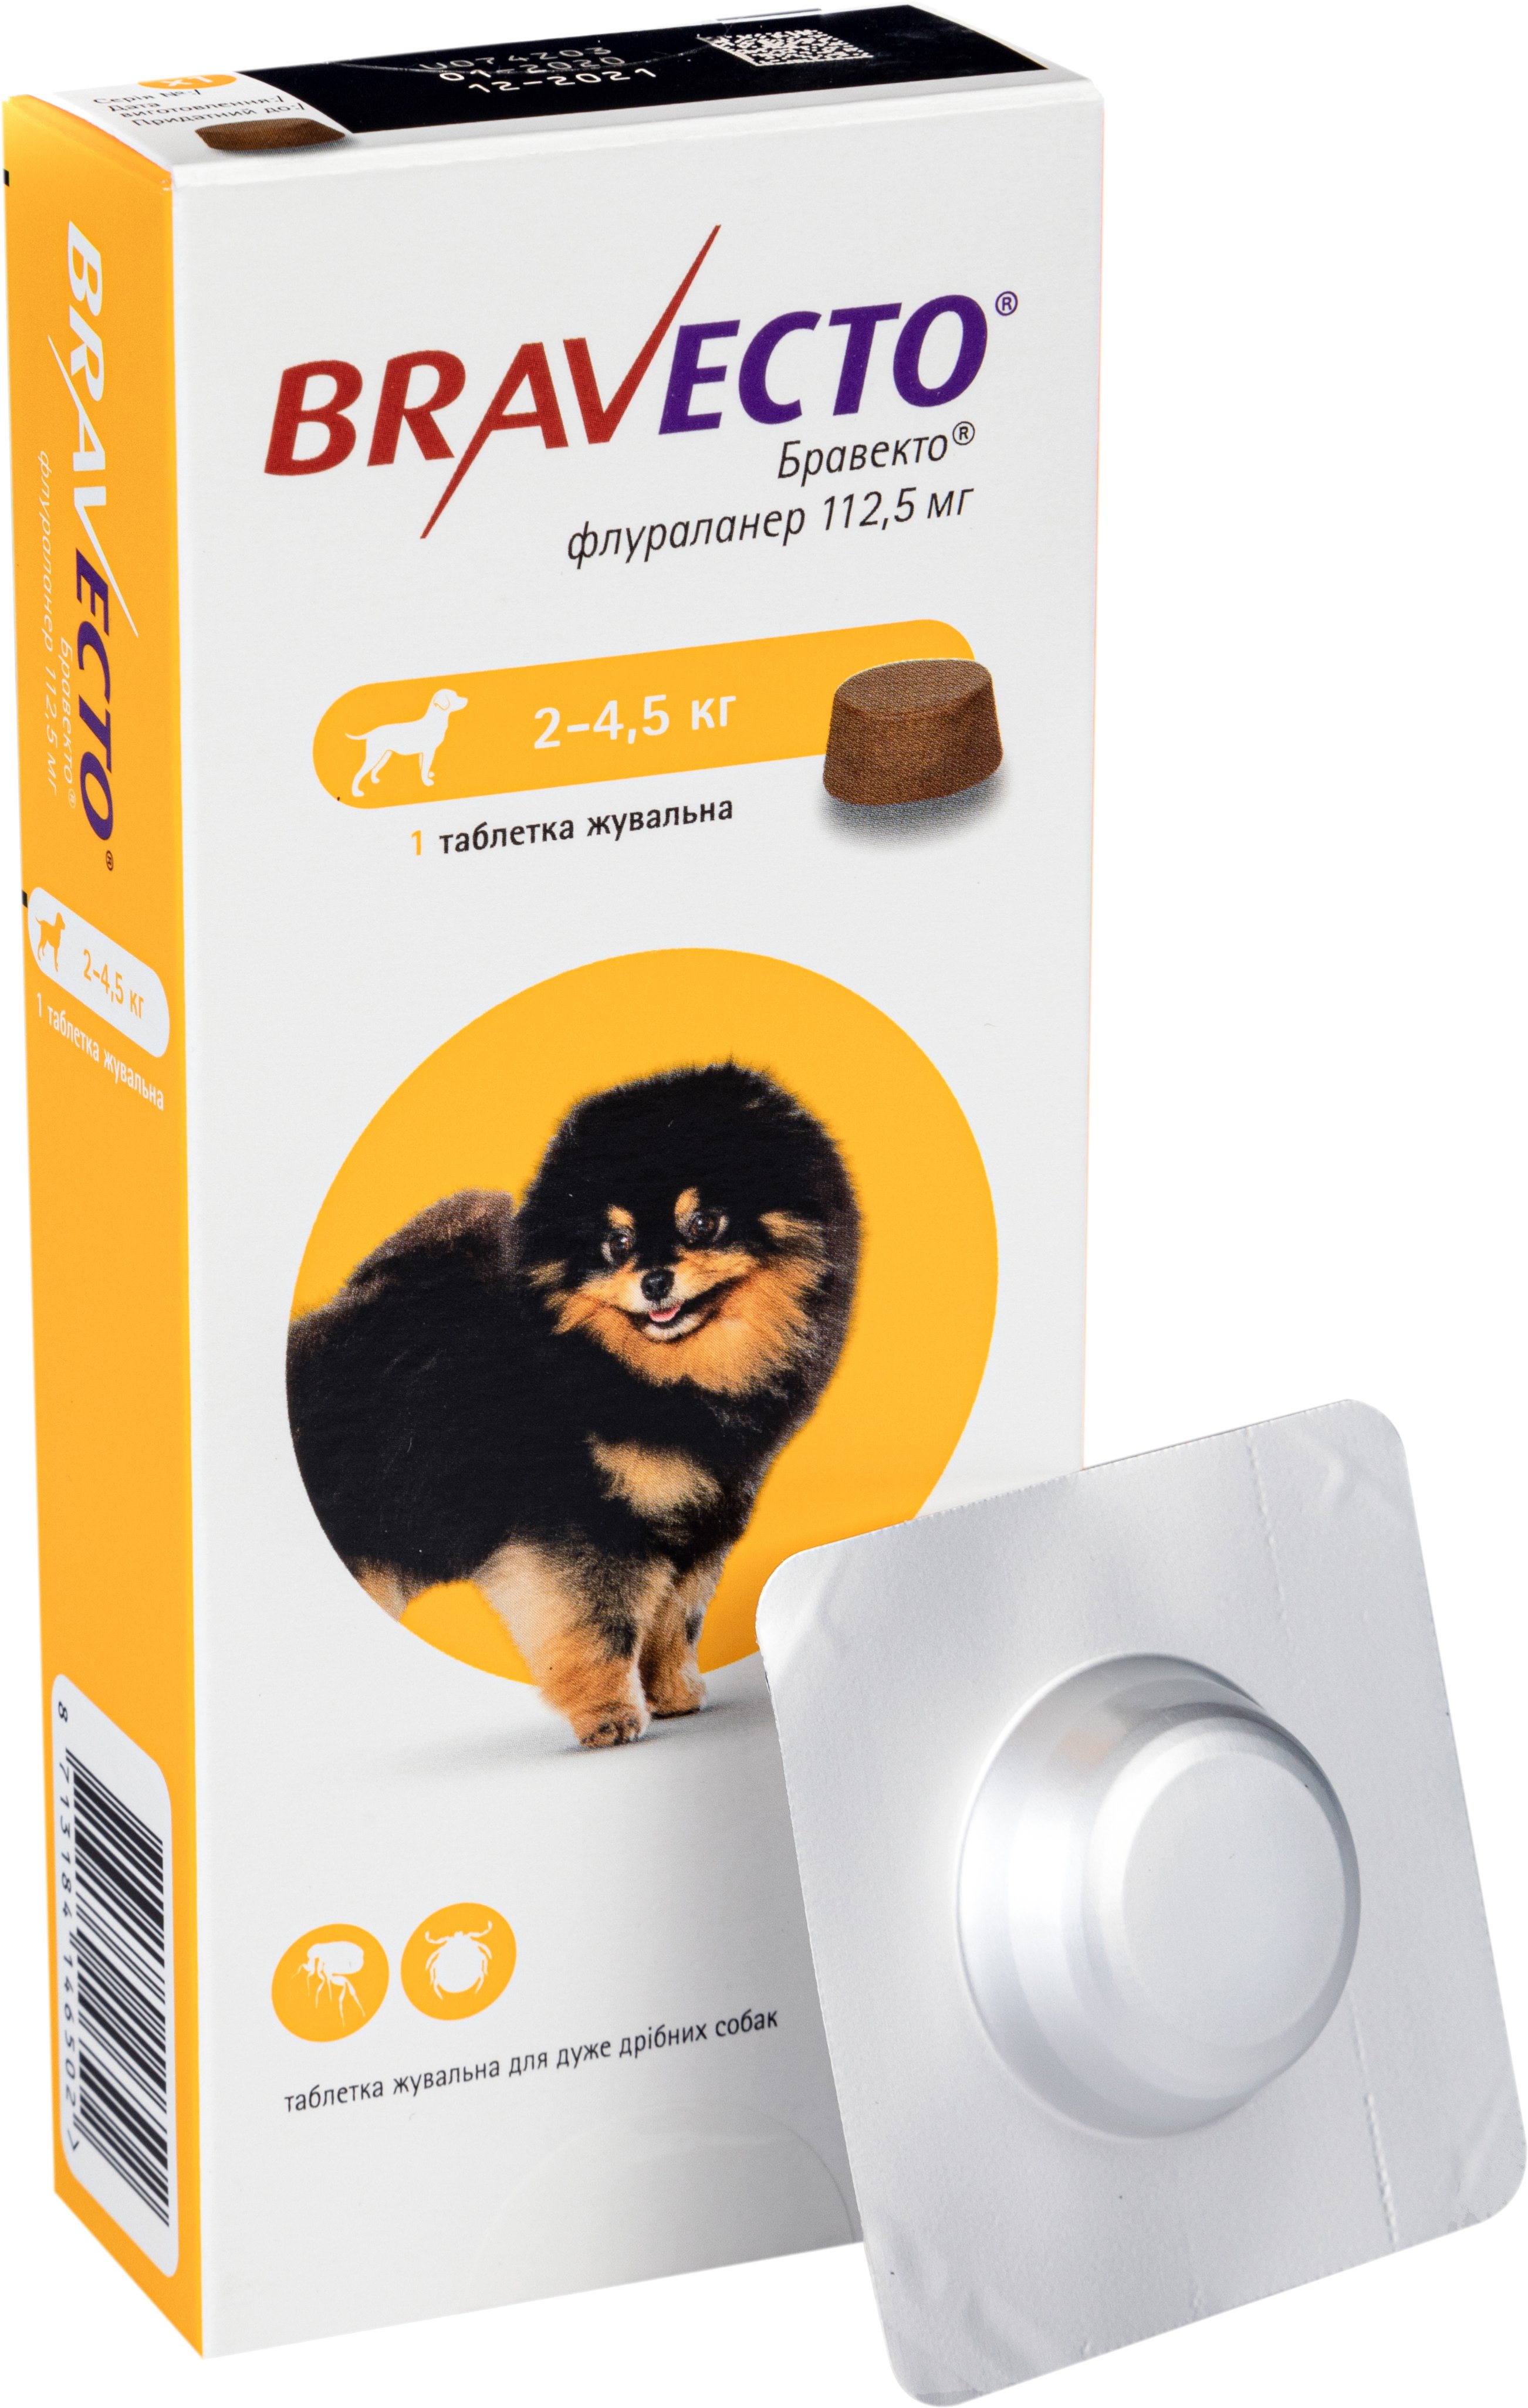 Жевательная таблетка Bravecto, для собак массой от 2 до 4.5 кг, 1 шт. - фото 1